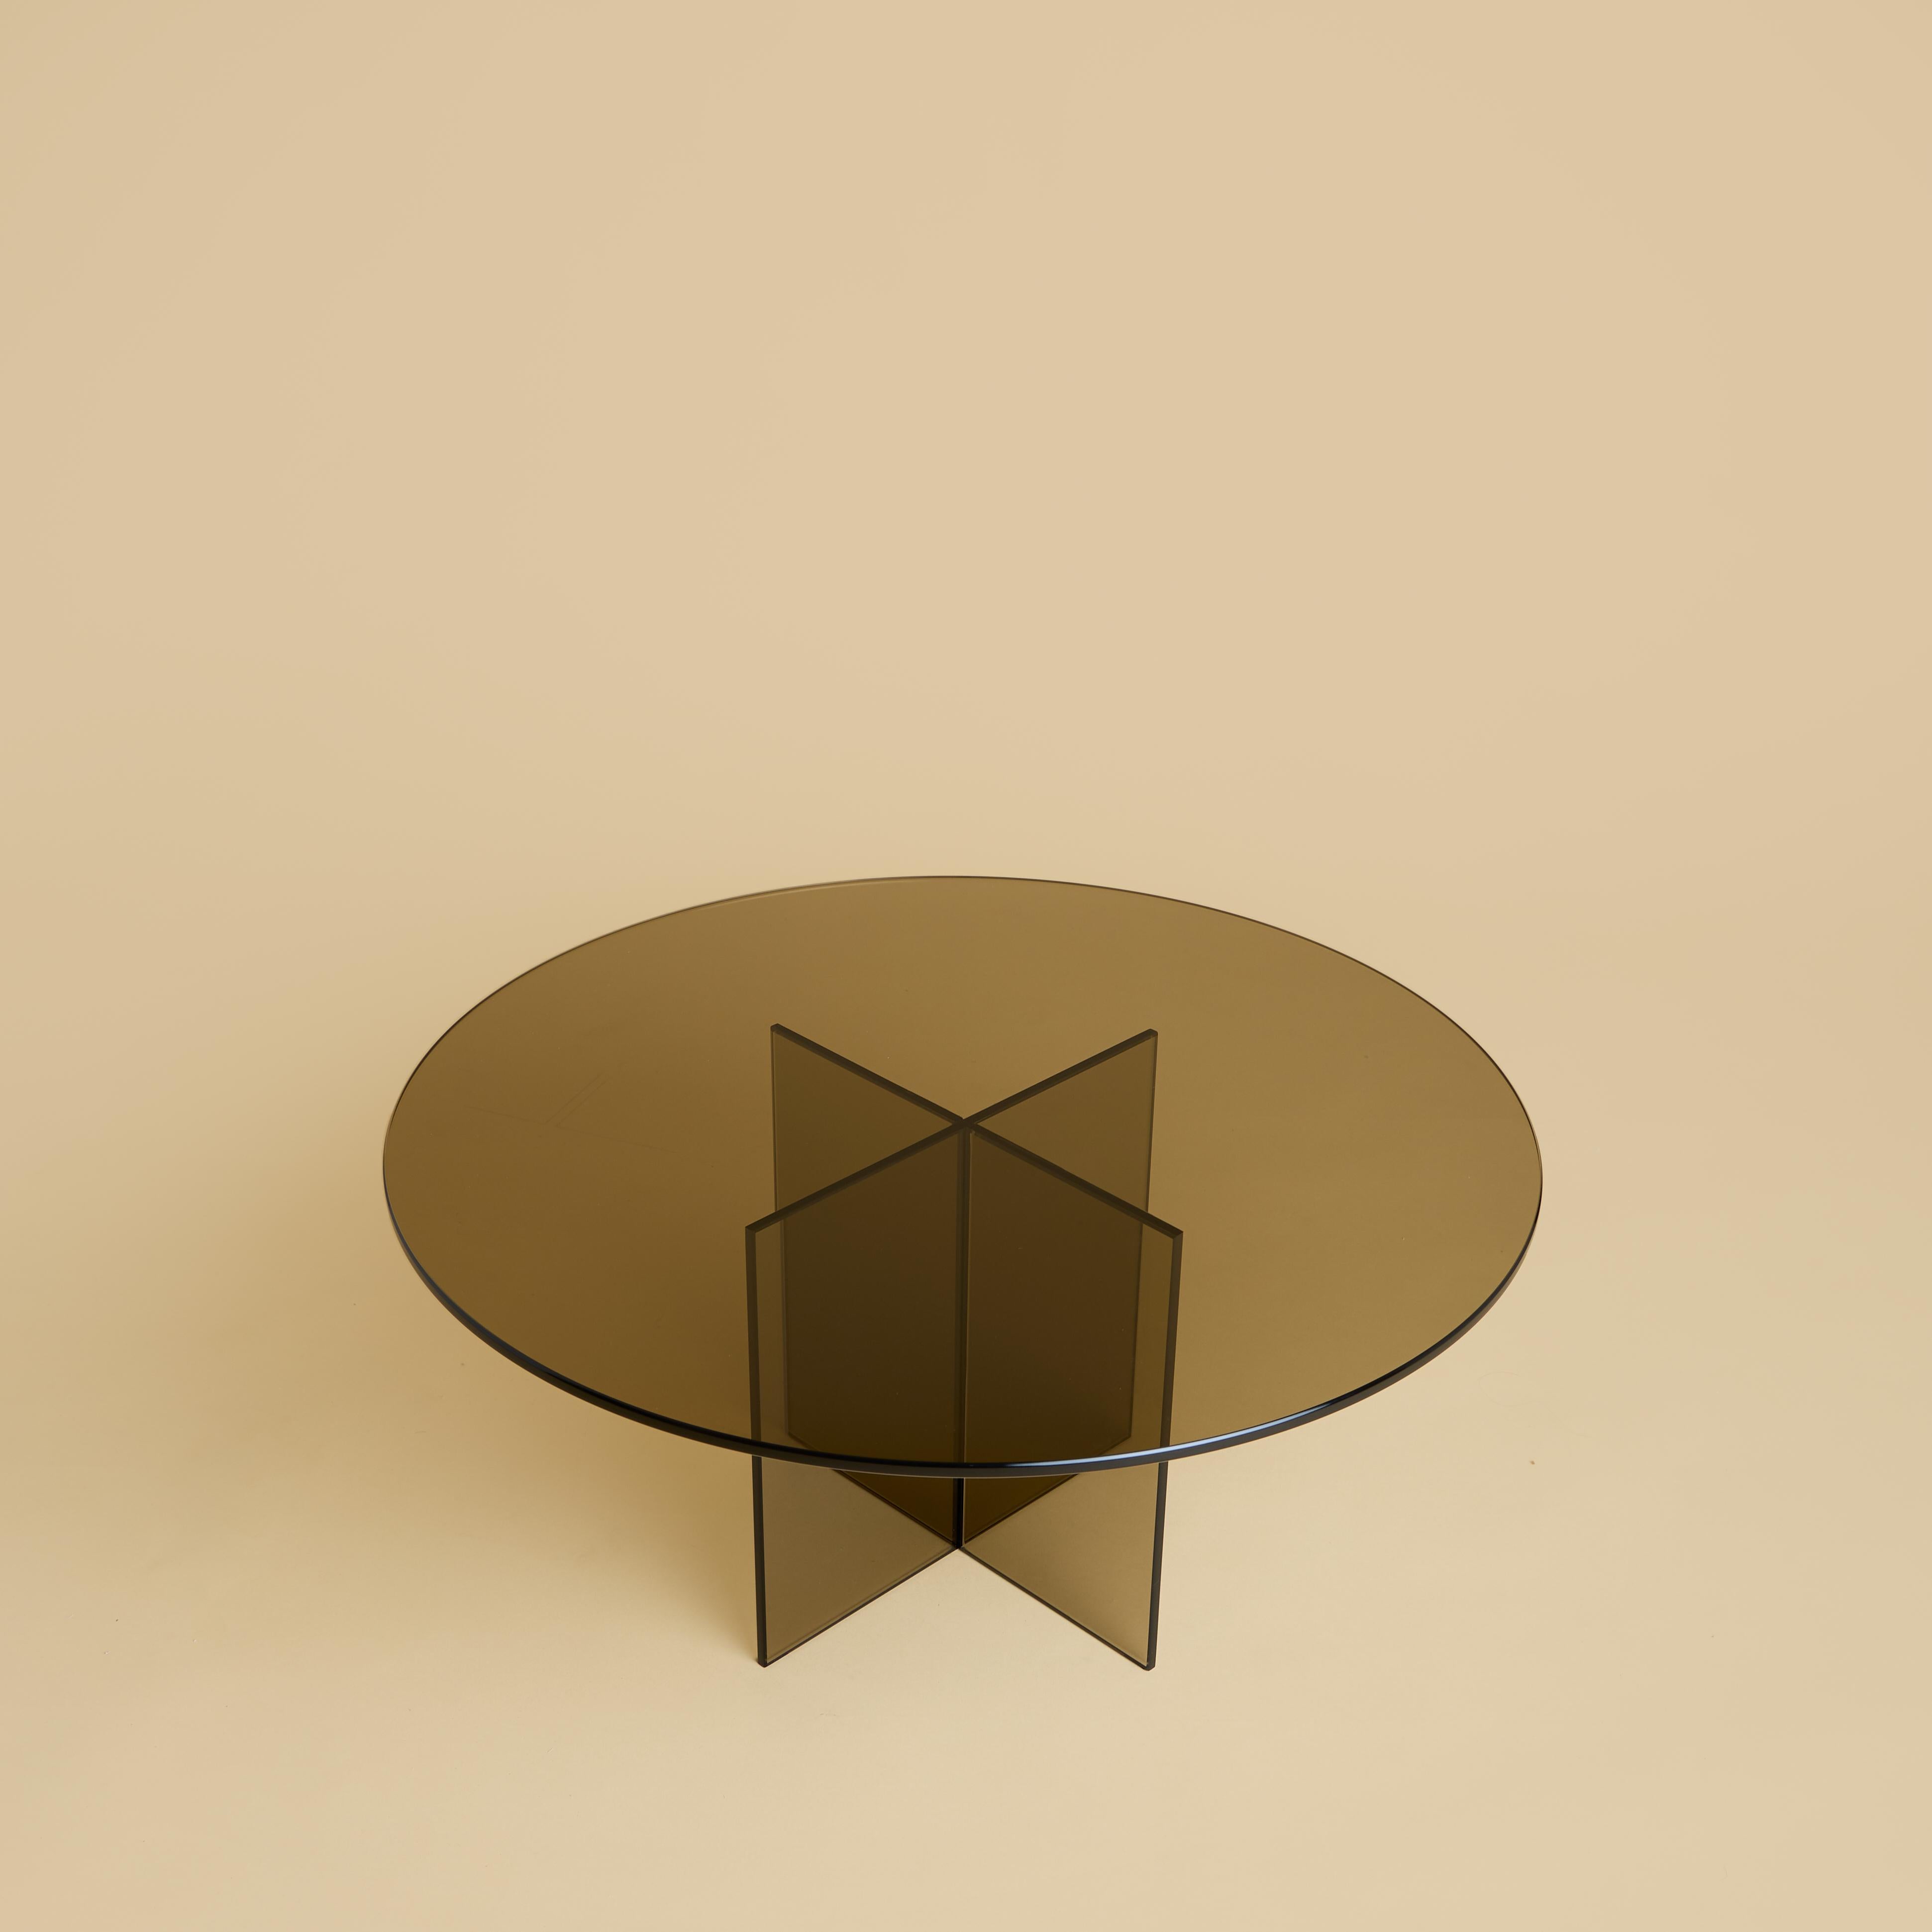 Der Couchtisch Aka ist ganz aus bronziertem Glas gefertigt. Die Platte ist kreisförmig und hat einen Durchmesser von 60 cm, während der Sockel durch das Verkleben von leicht abgeschrägten 6 mm dicken Platten entsteht.
Das bronzierte Glas dieses